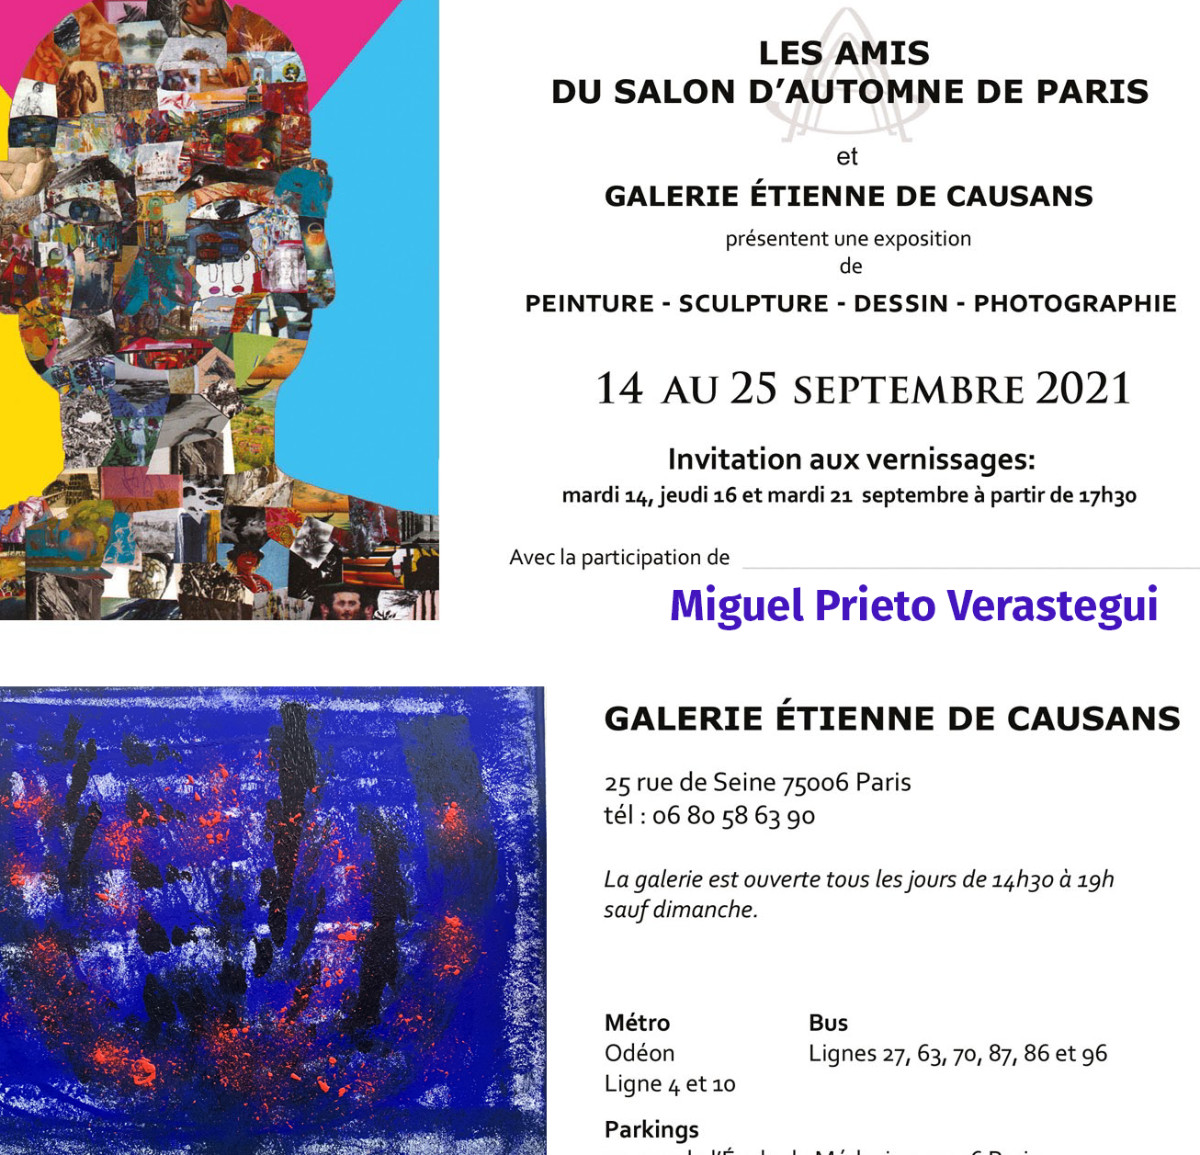 Exposition Amis du salon d’automne de Paris sur le site d’ARTactif